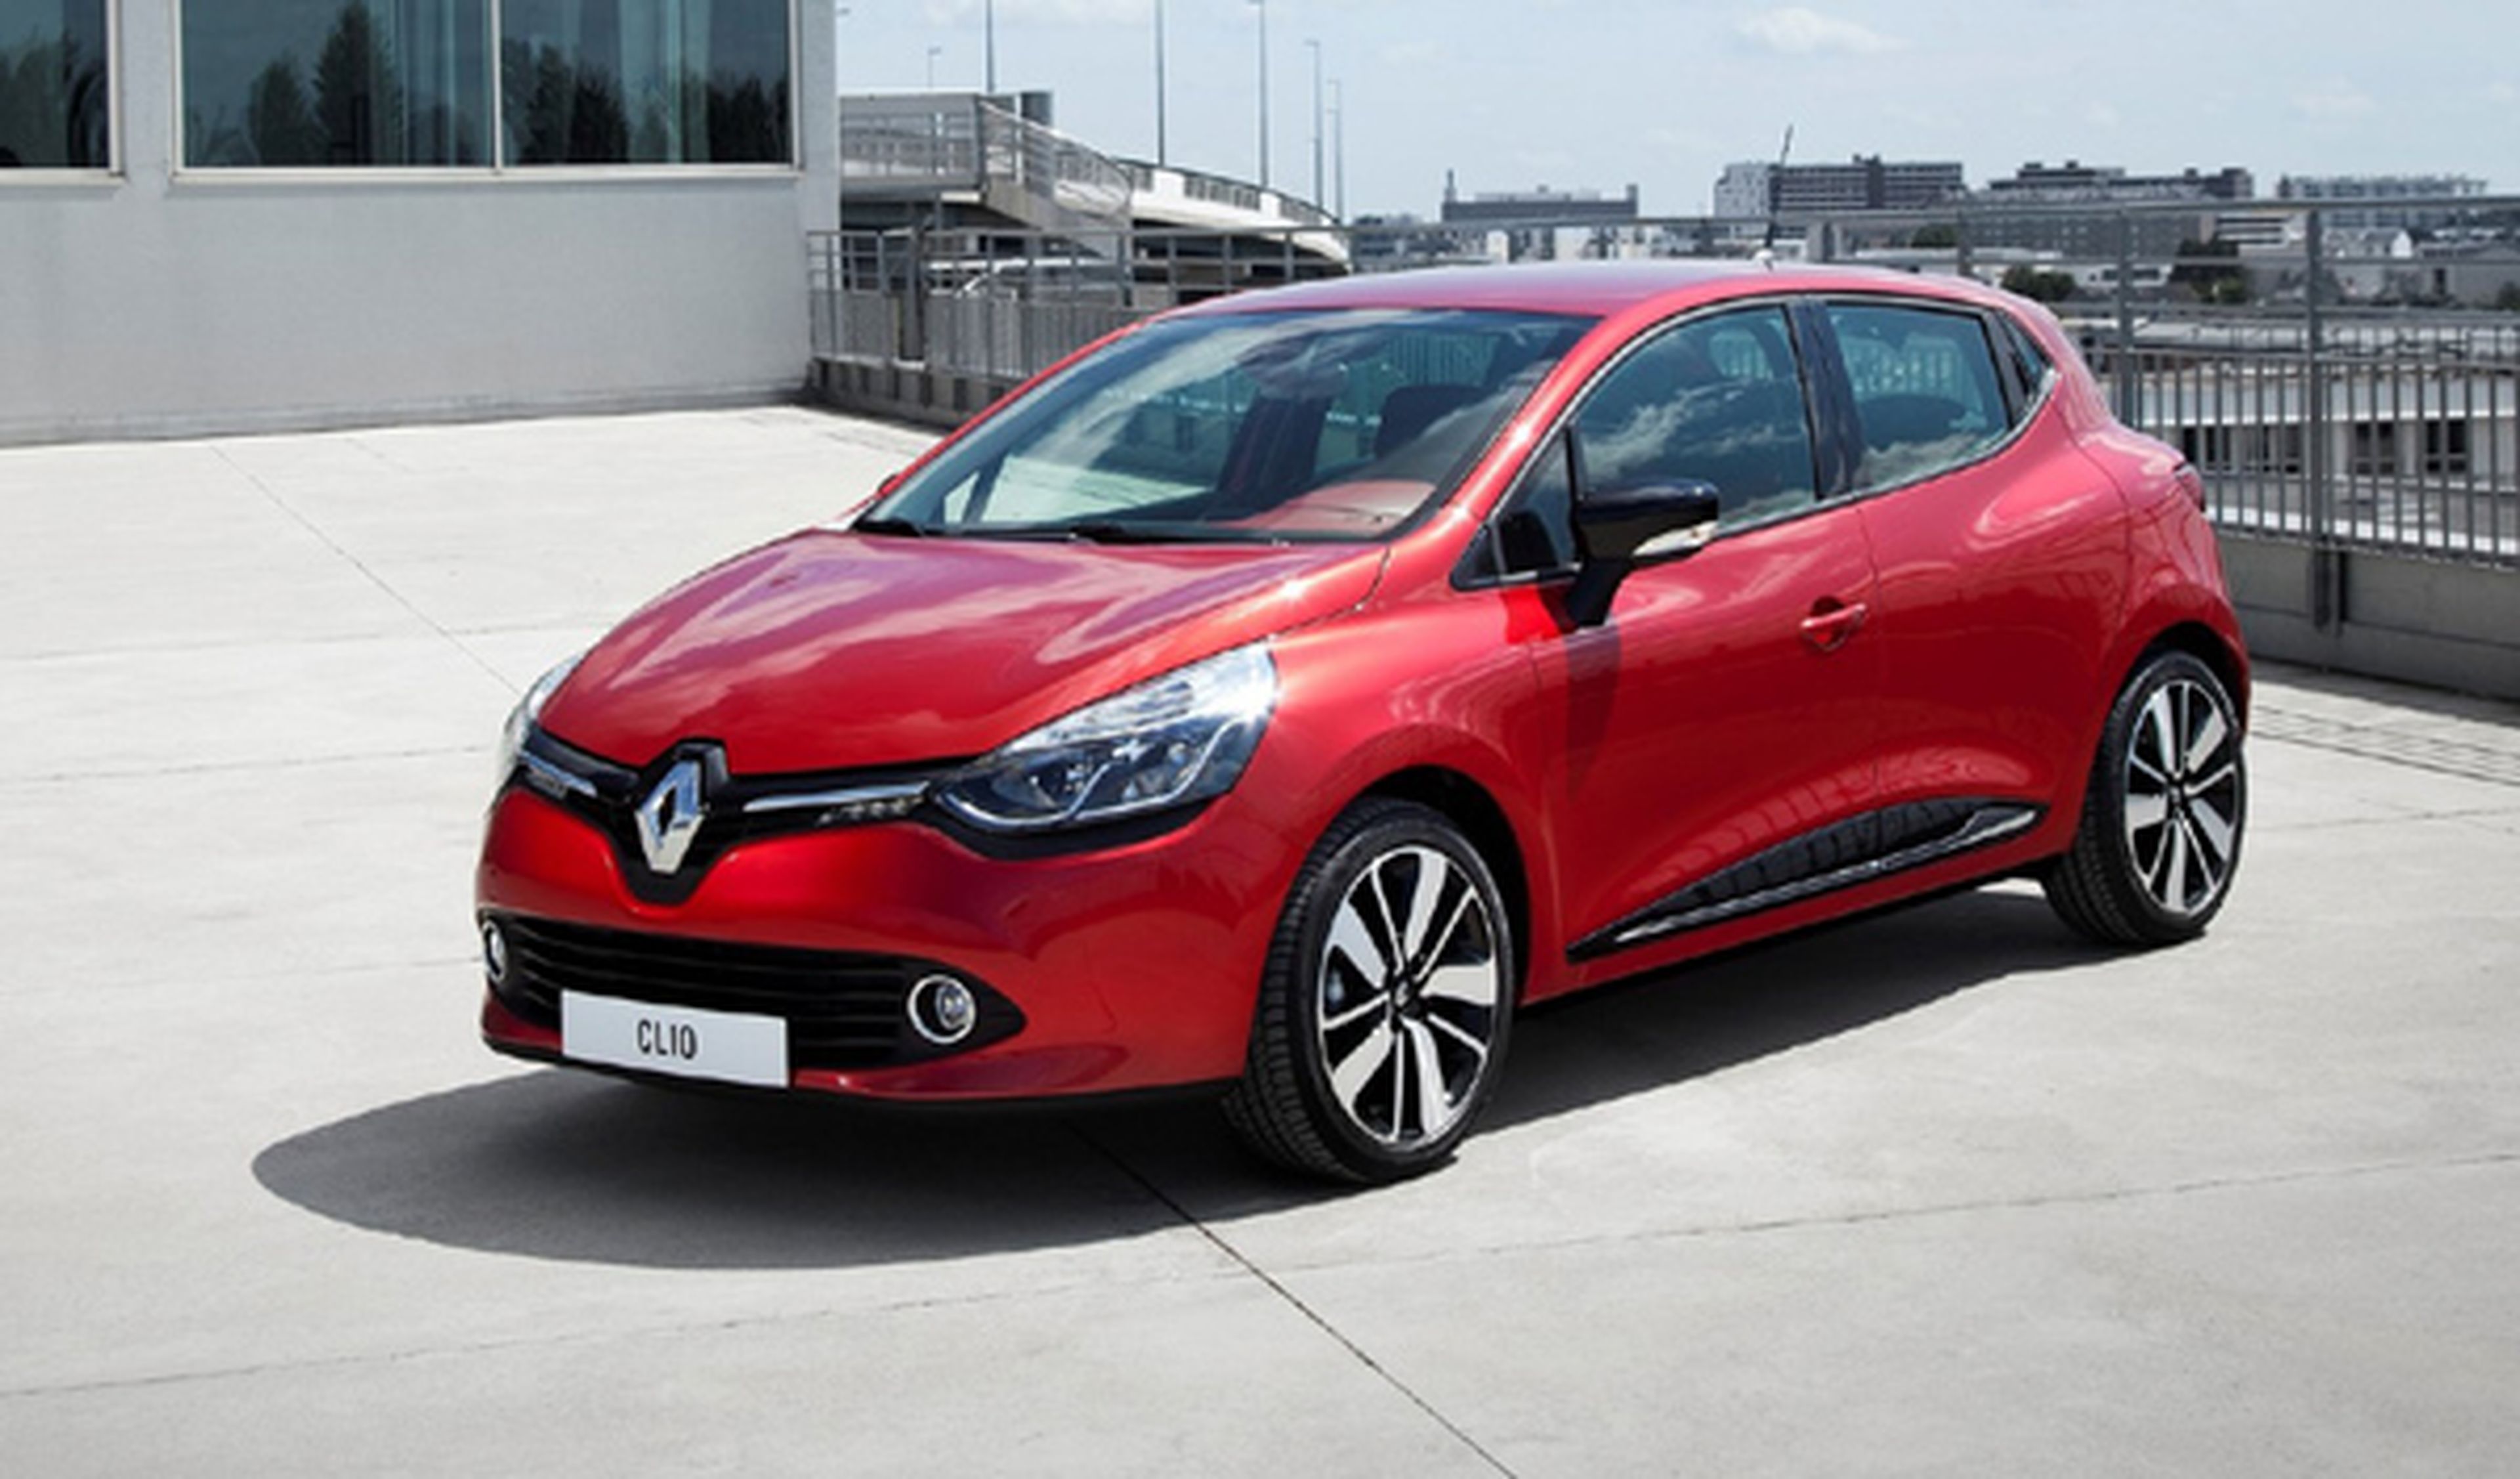 coches nuevos hasta 12000 euros Renault Clio